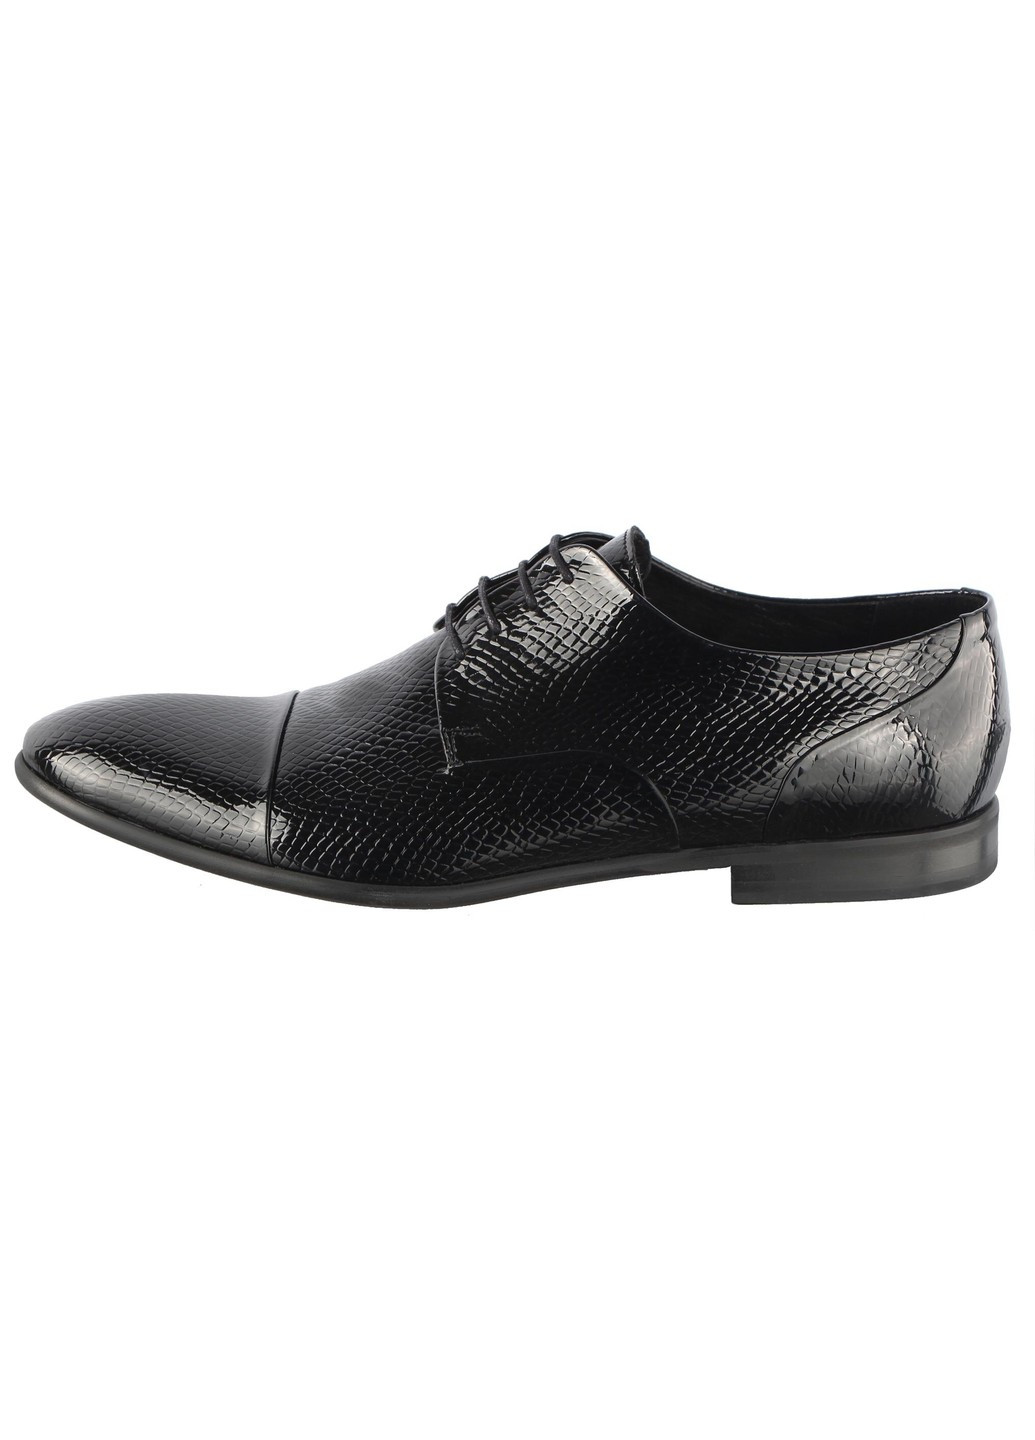 Черные мужские классические туфли 5780 Conhpol на шнурках